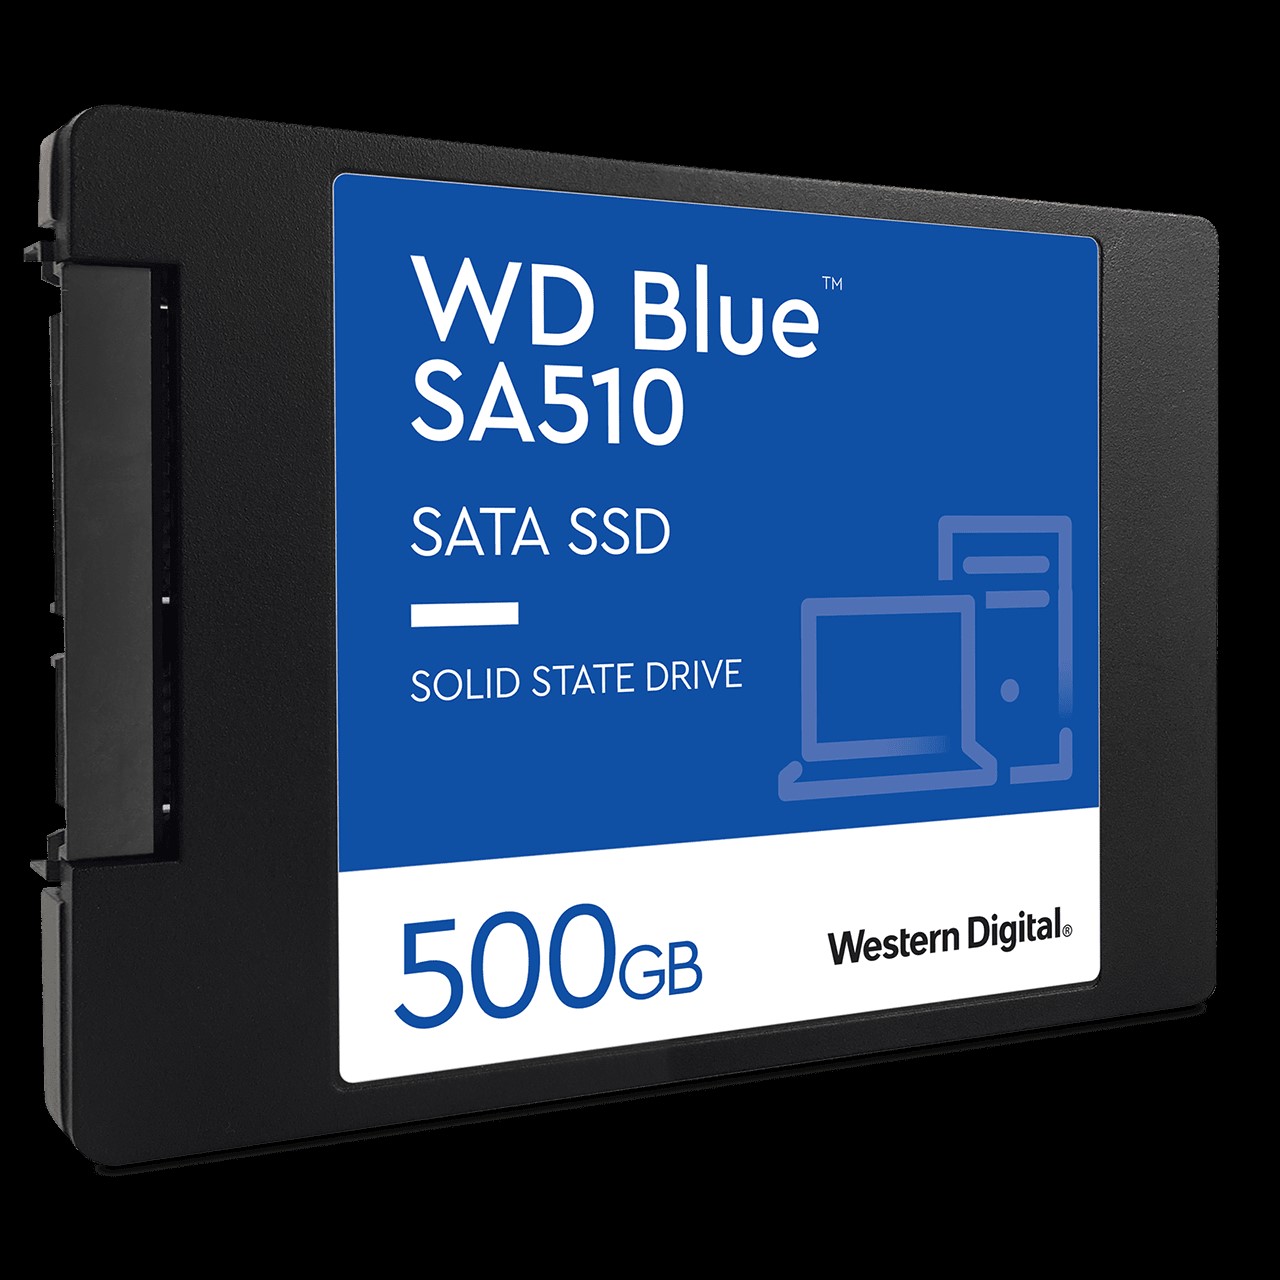 UNIDAD SSD WESTERN DIGITAL BLUE YODA SA510 500GB SATA 2.5